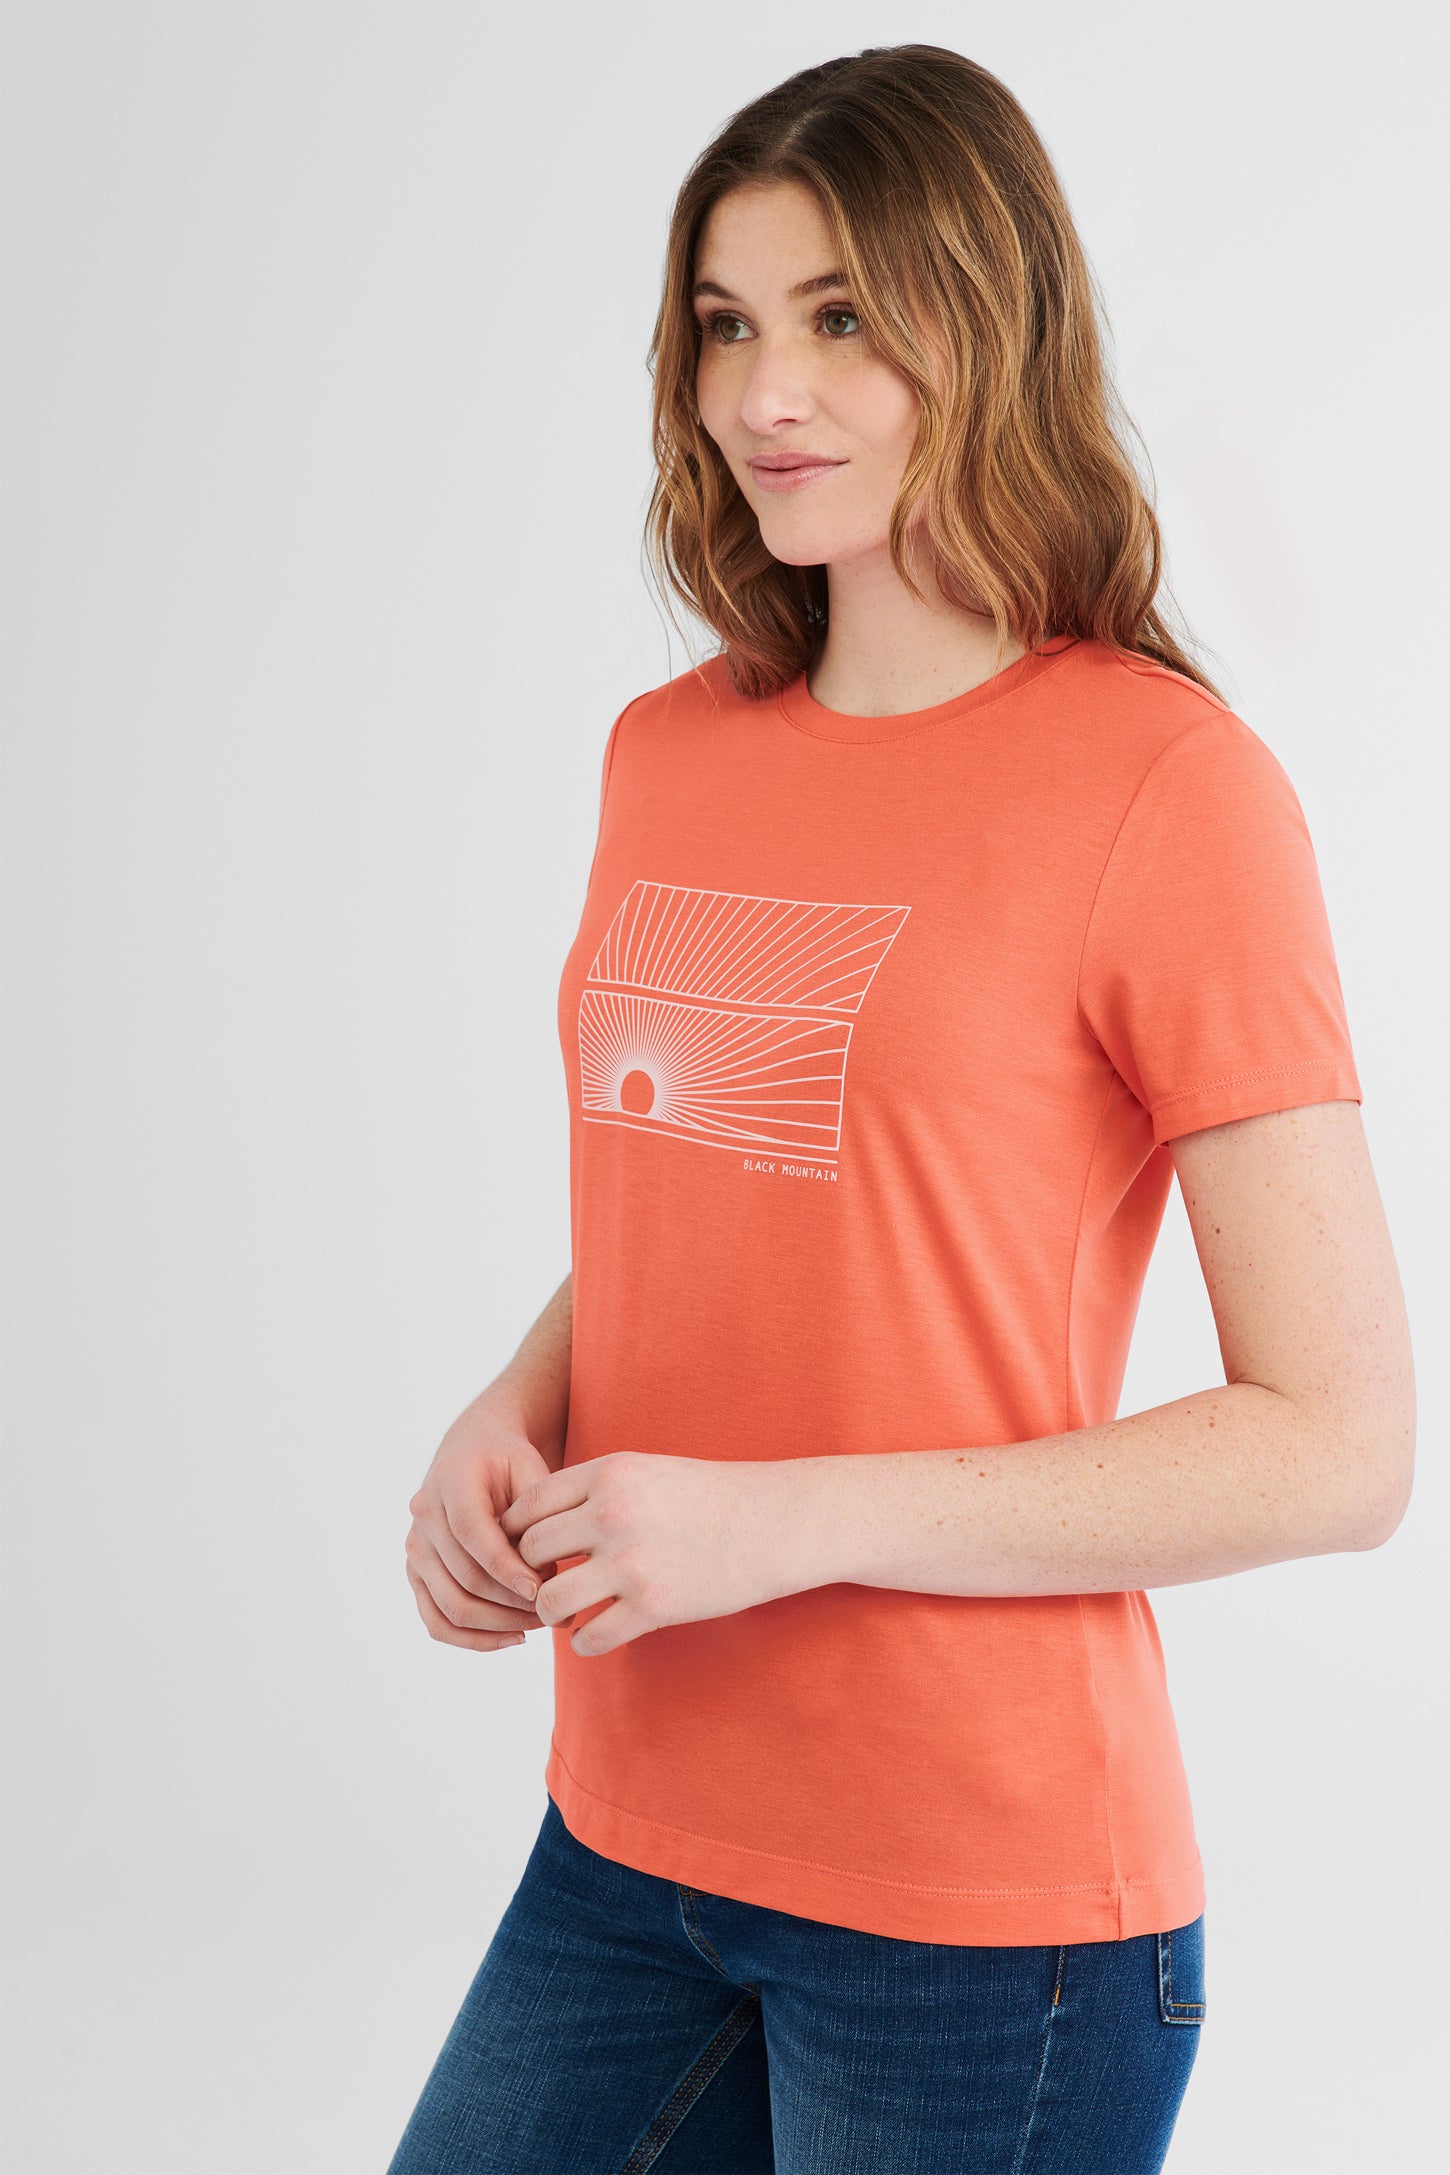 T-shirt imprimé BM, 2/50$ - Femme && CORAIL